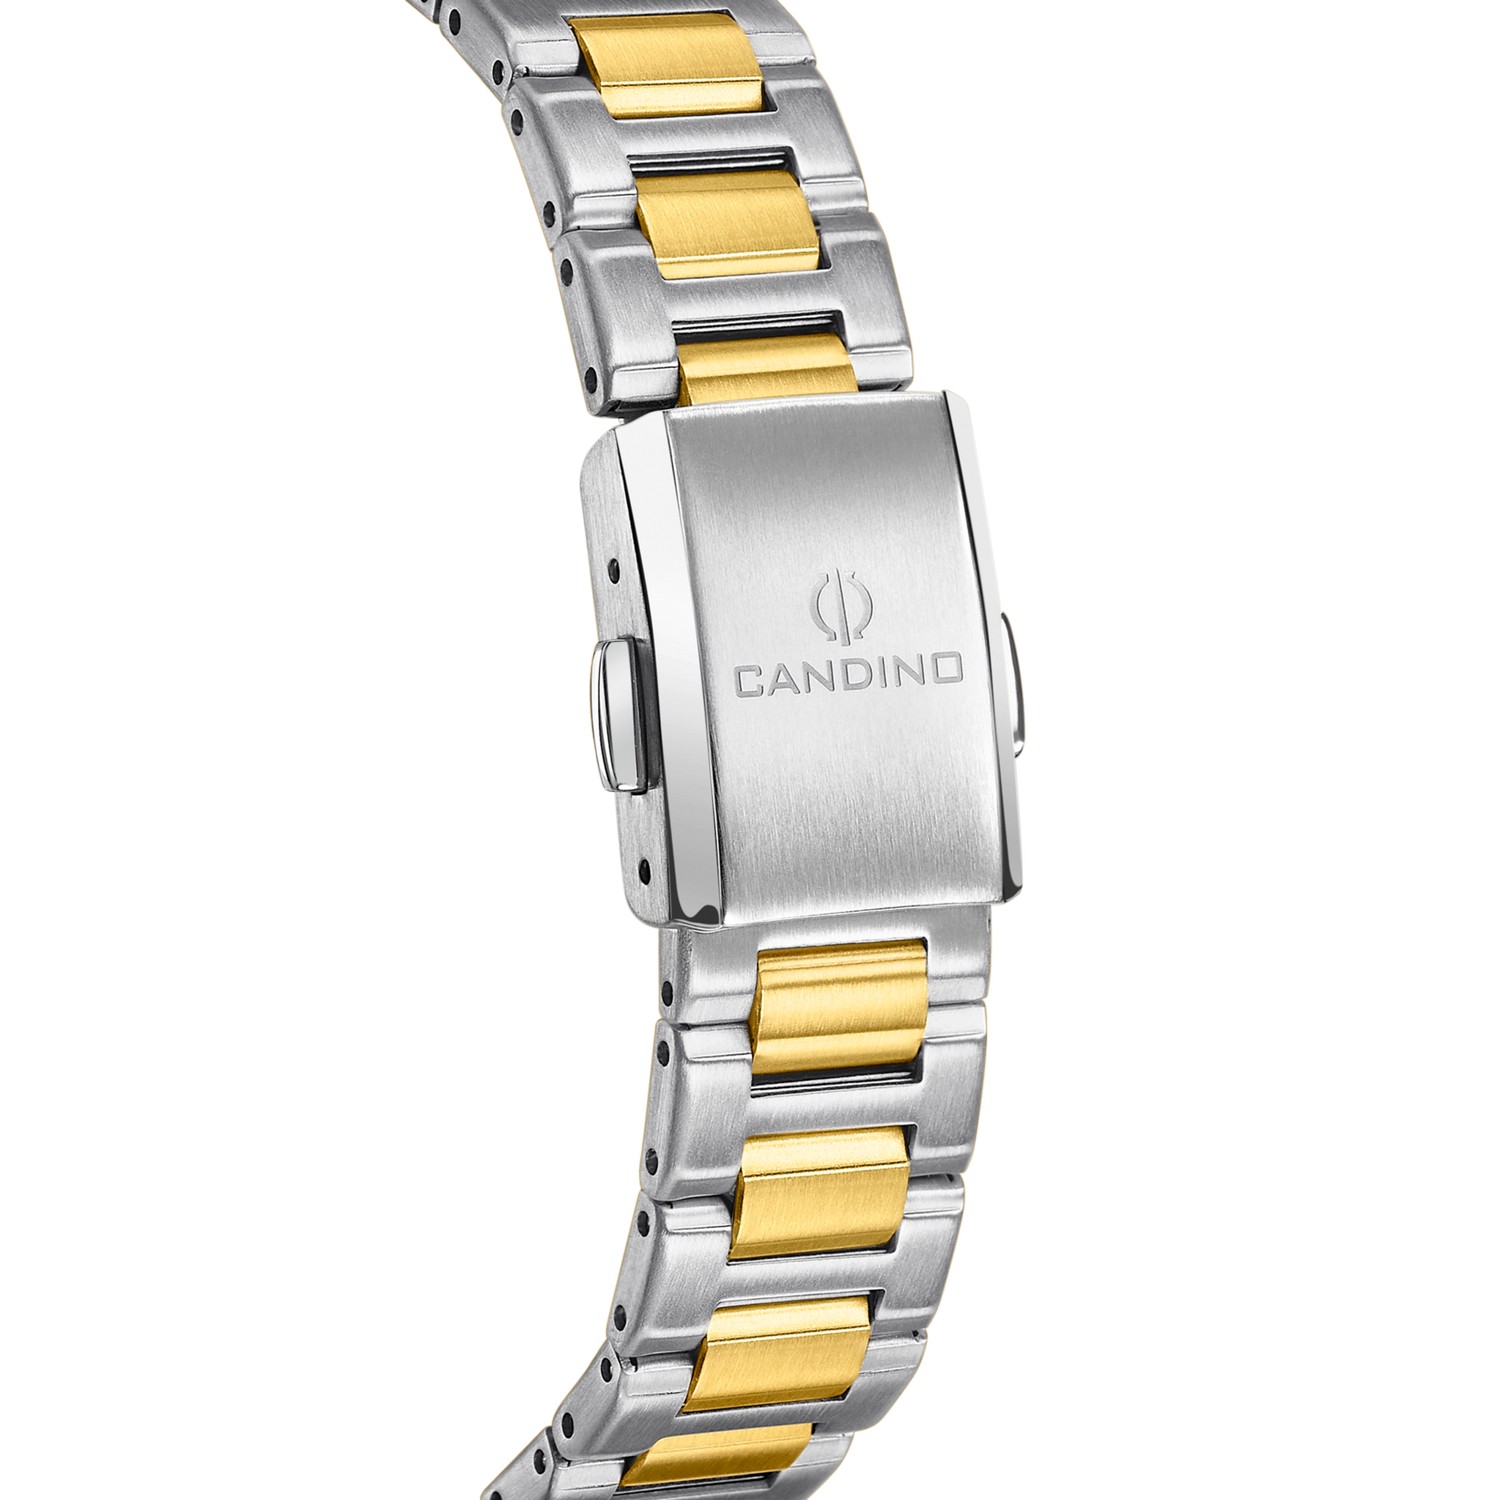 CANDINO  Женские швейцарские часы, кварцевый механизм, сталь, 33,5 мм